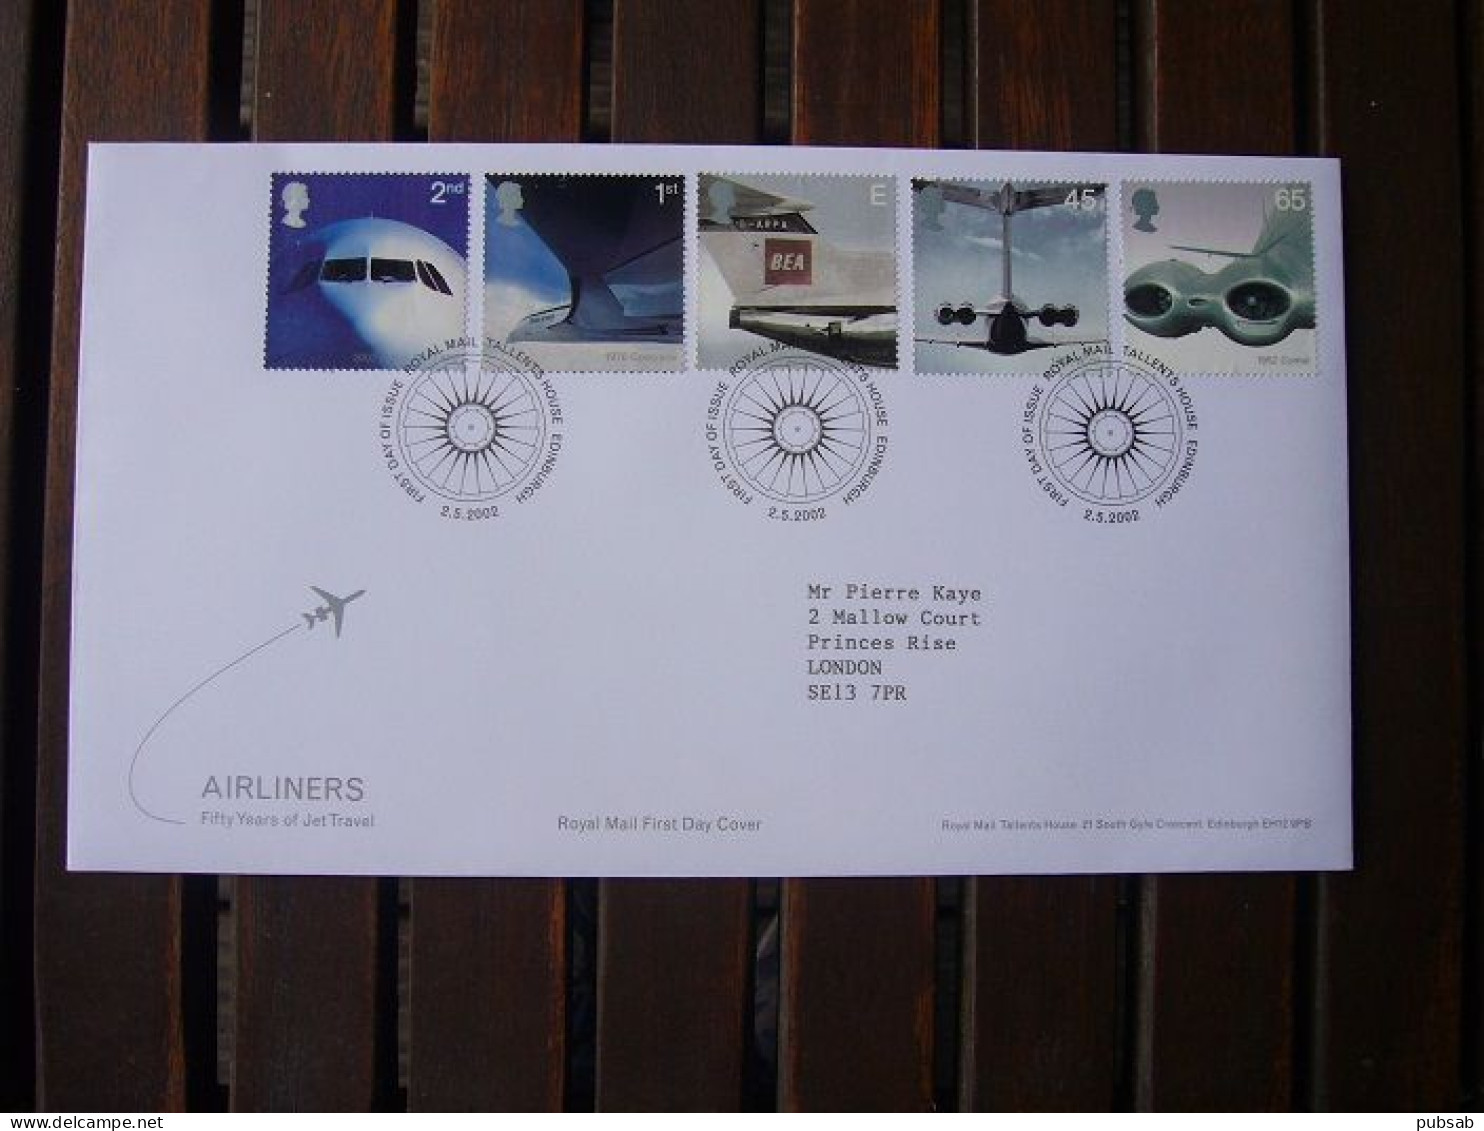 Avion / Airplane / BRITISH AIRWAYS / Airbus - Concorde - Trident - VC-10 - Comet / May 2,2002 - 2001-2010 Em. Décimales